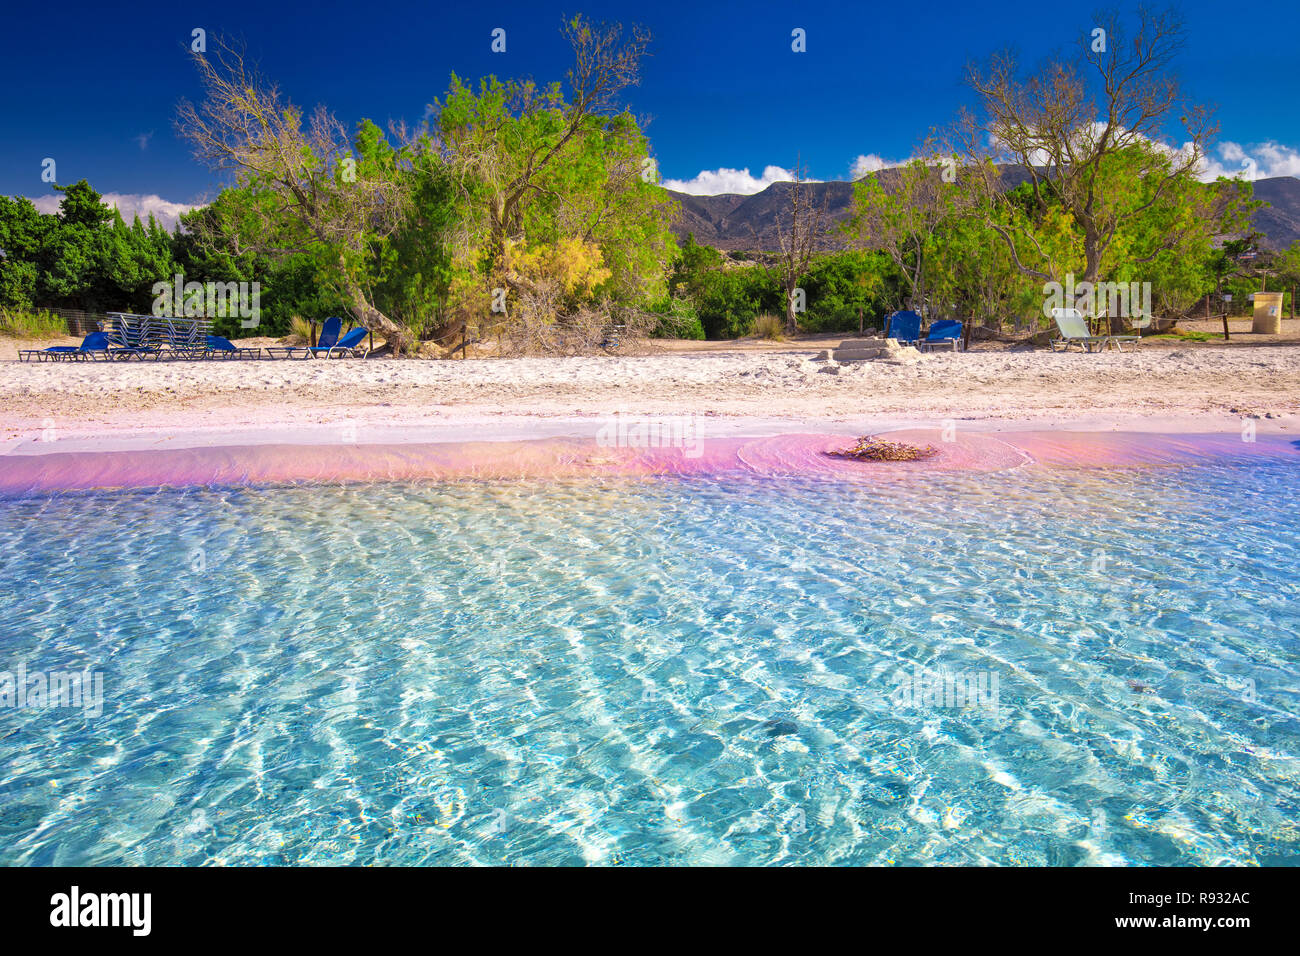 Spiaggia di Elafonissi a Creta isola di azzurro acqua chiara, la Grecia, l'Europa. Creta è la più grande e la più popolata delle isole greche. Foto Stock